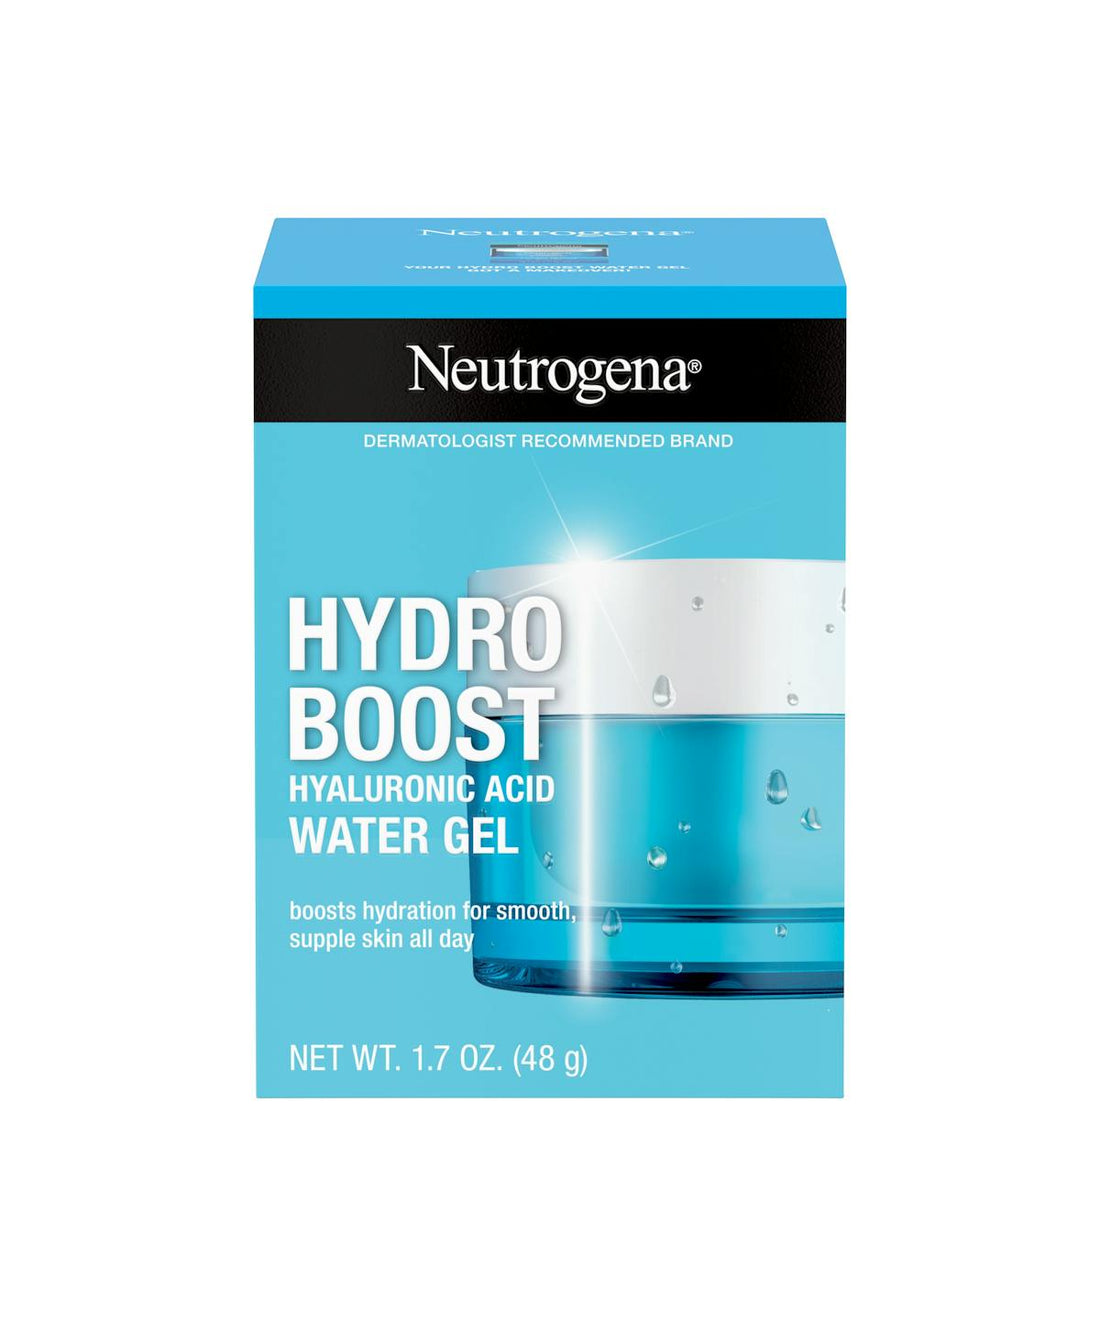 Hydroboost Hyaluronic Acid Water Gel (48g) - Neutrogena.